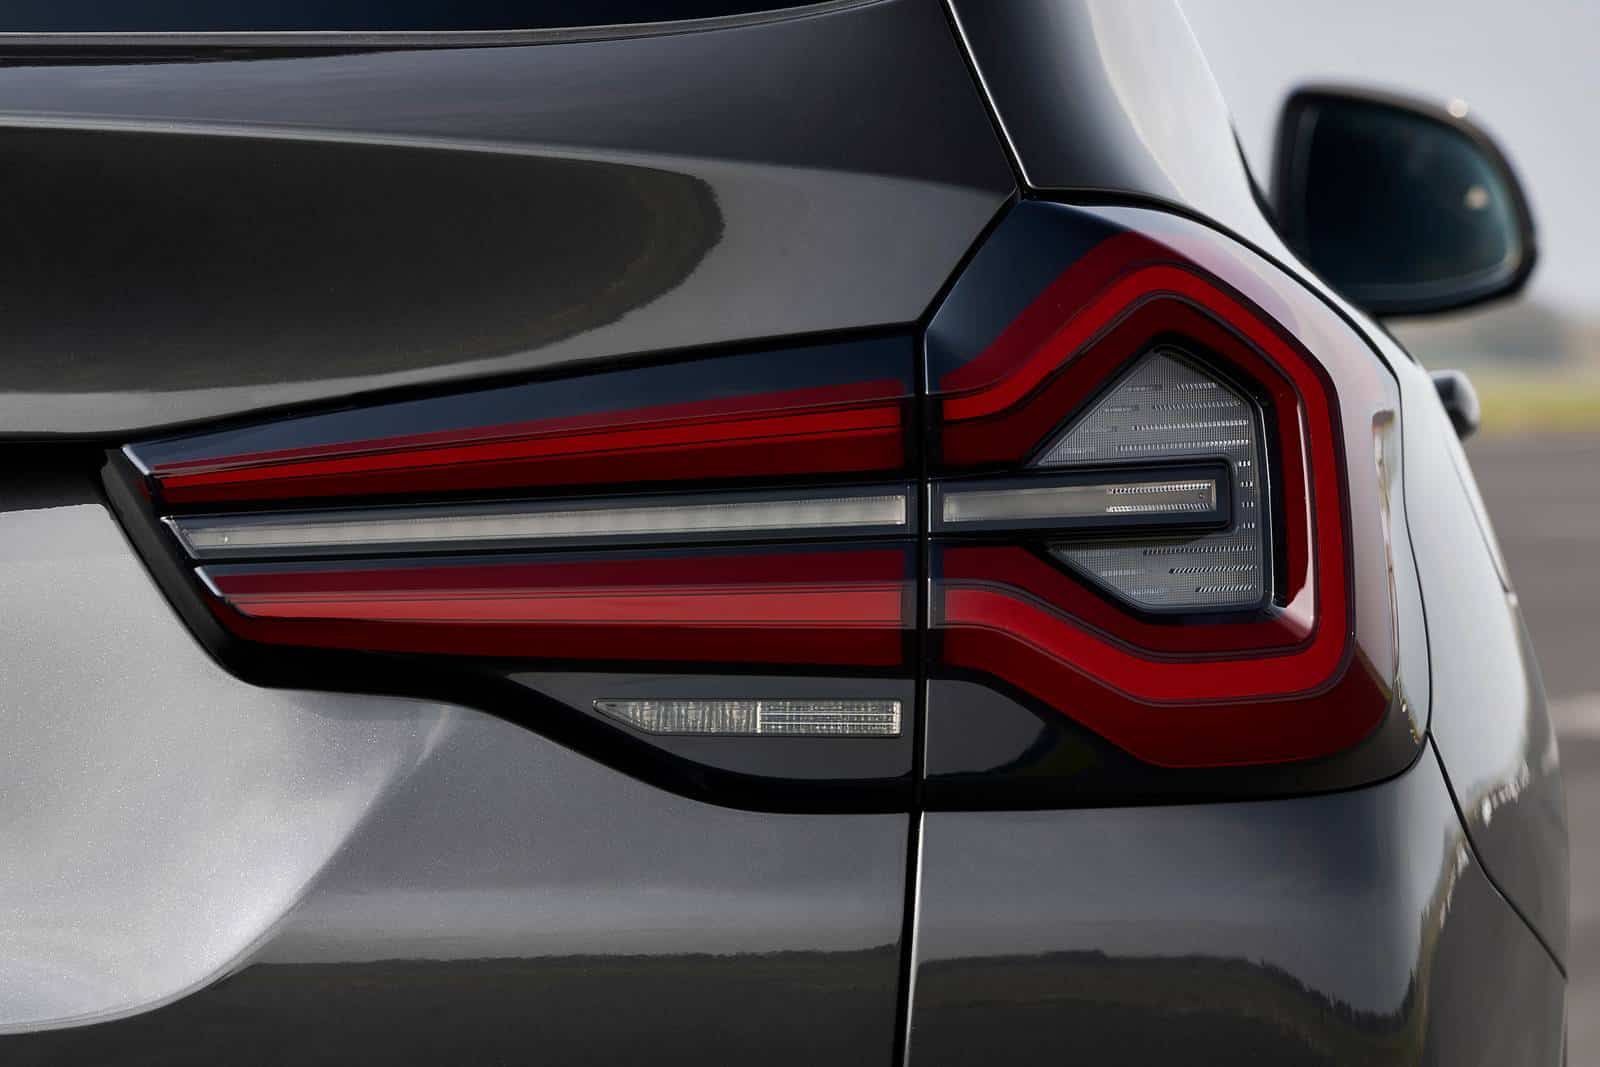 2022 BMW x3 review - exterior